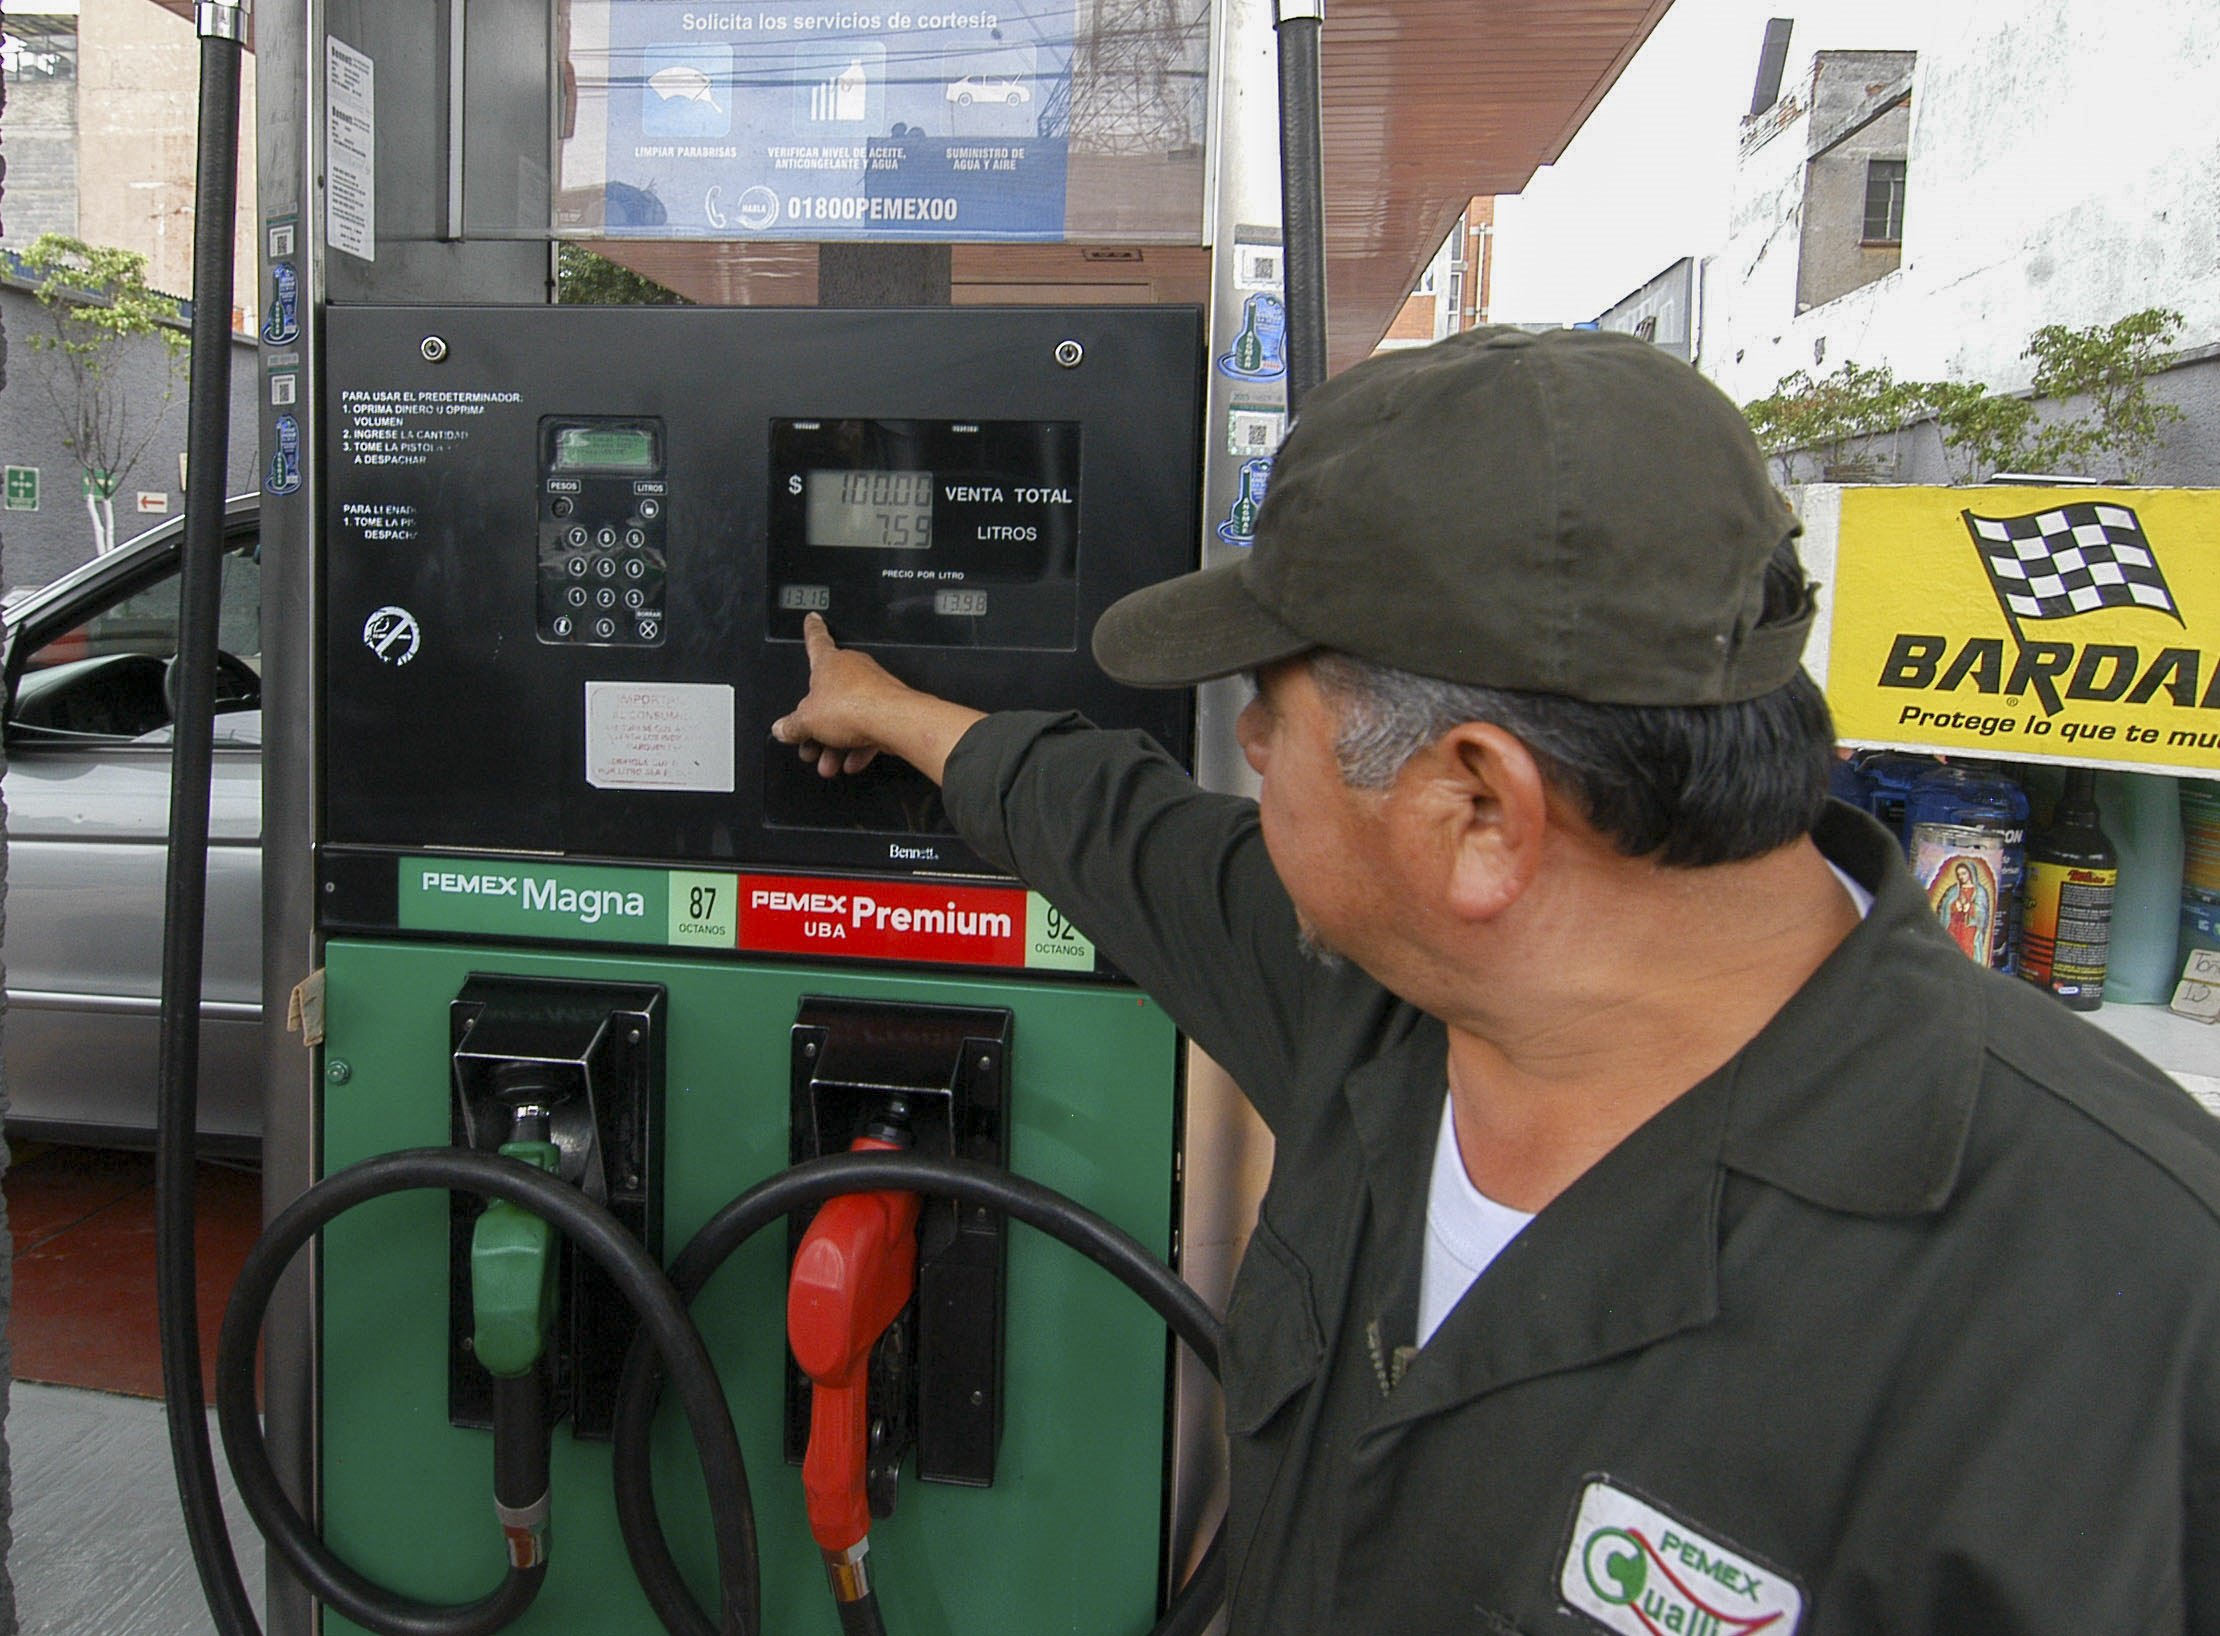  En el 2000, la gasolina costaba 4,83 pesos